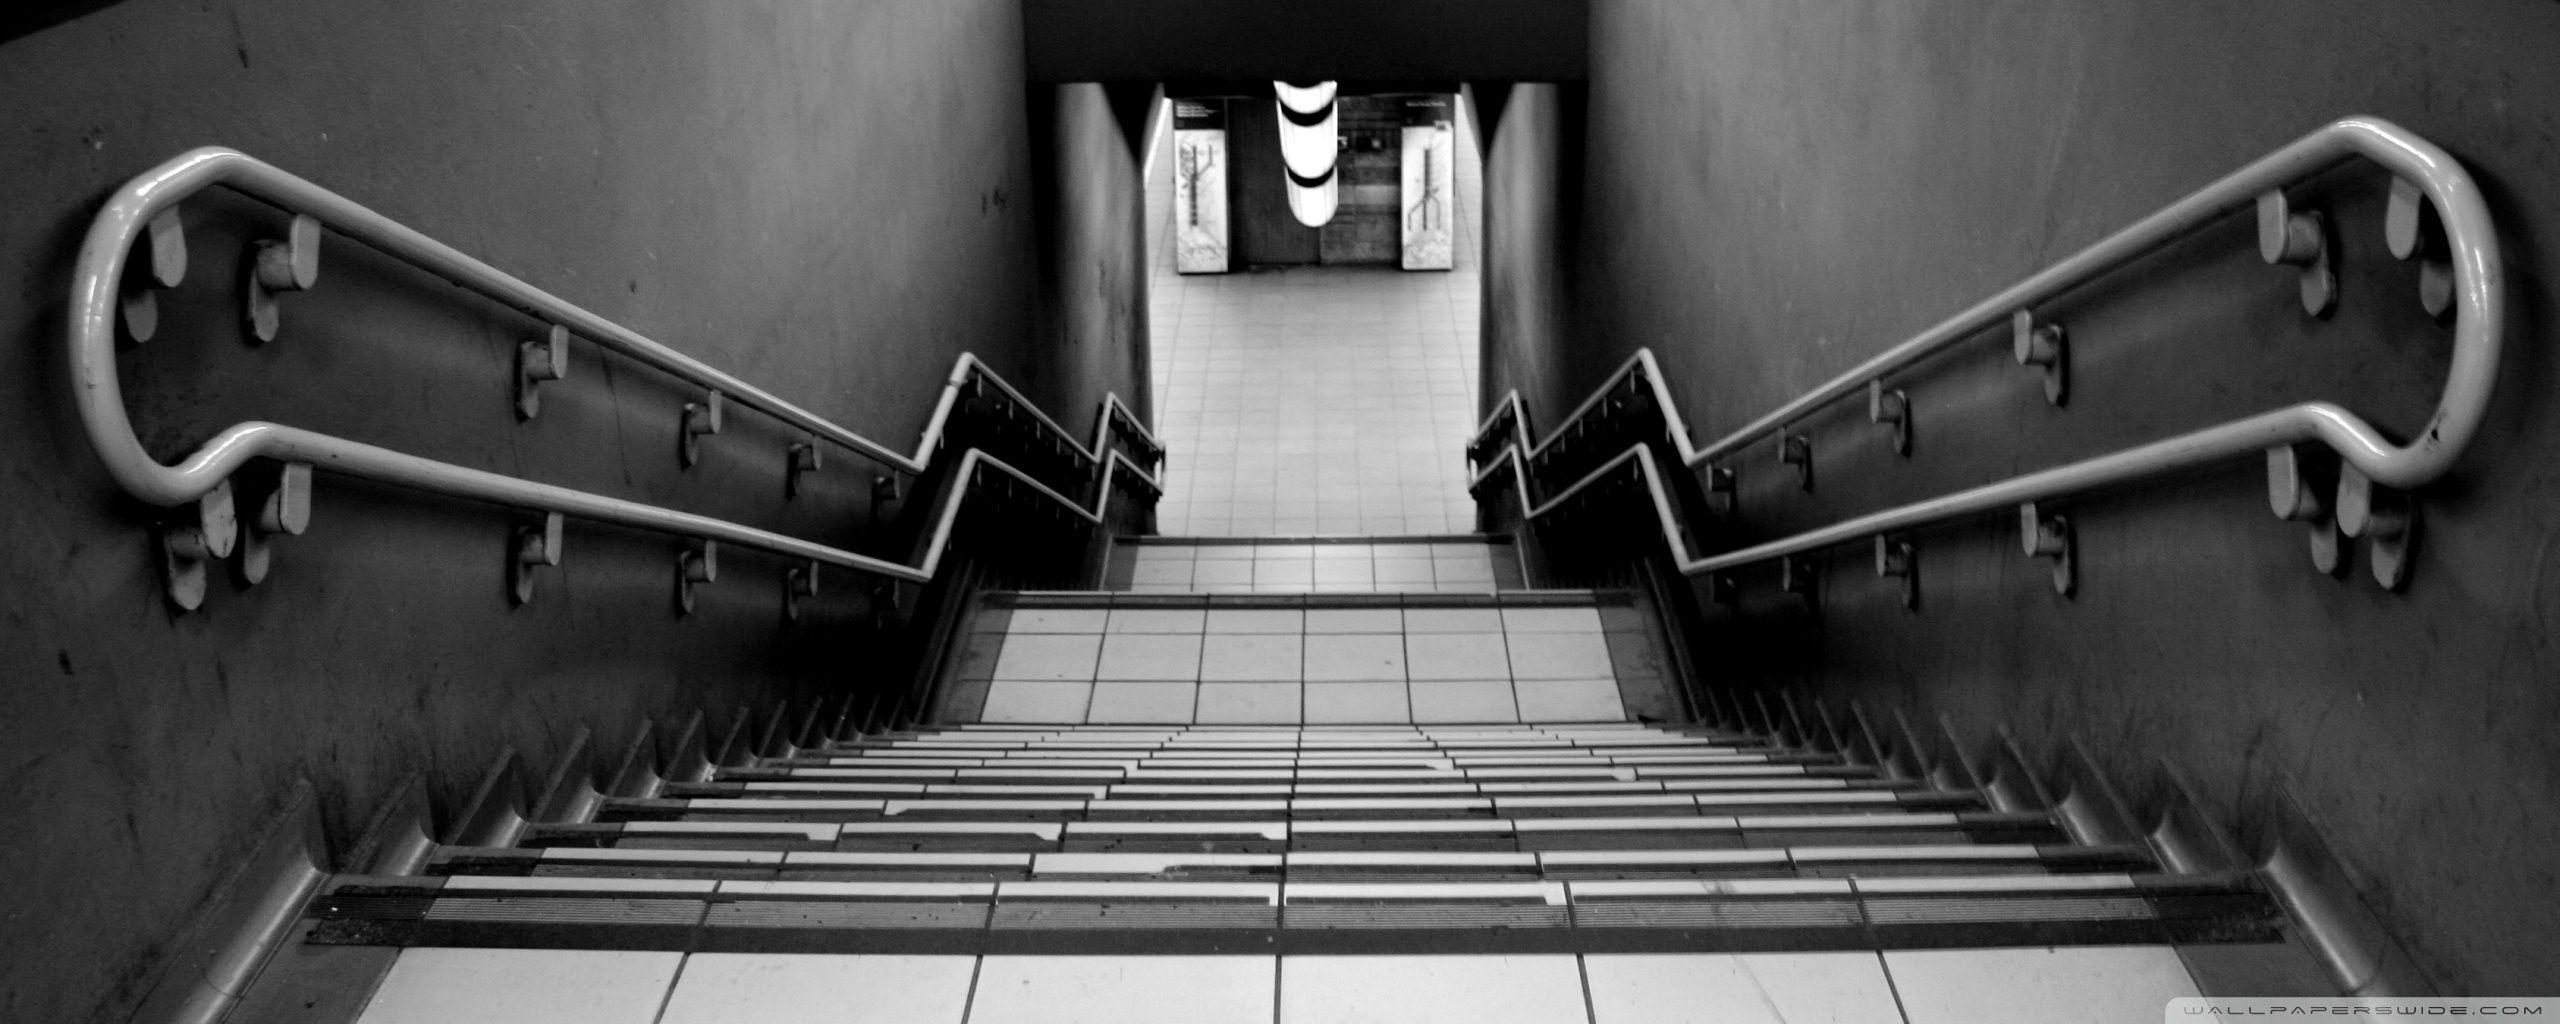 Subway Stairs HD desktop wallpaper, Widescreen, High Definition